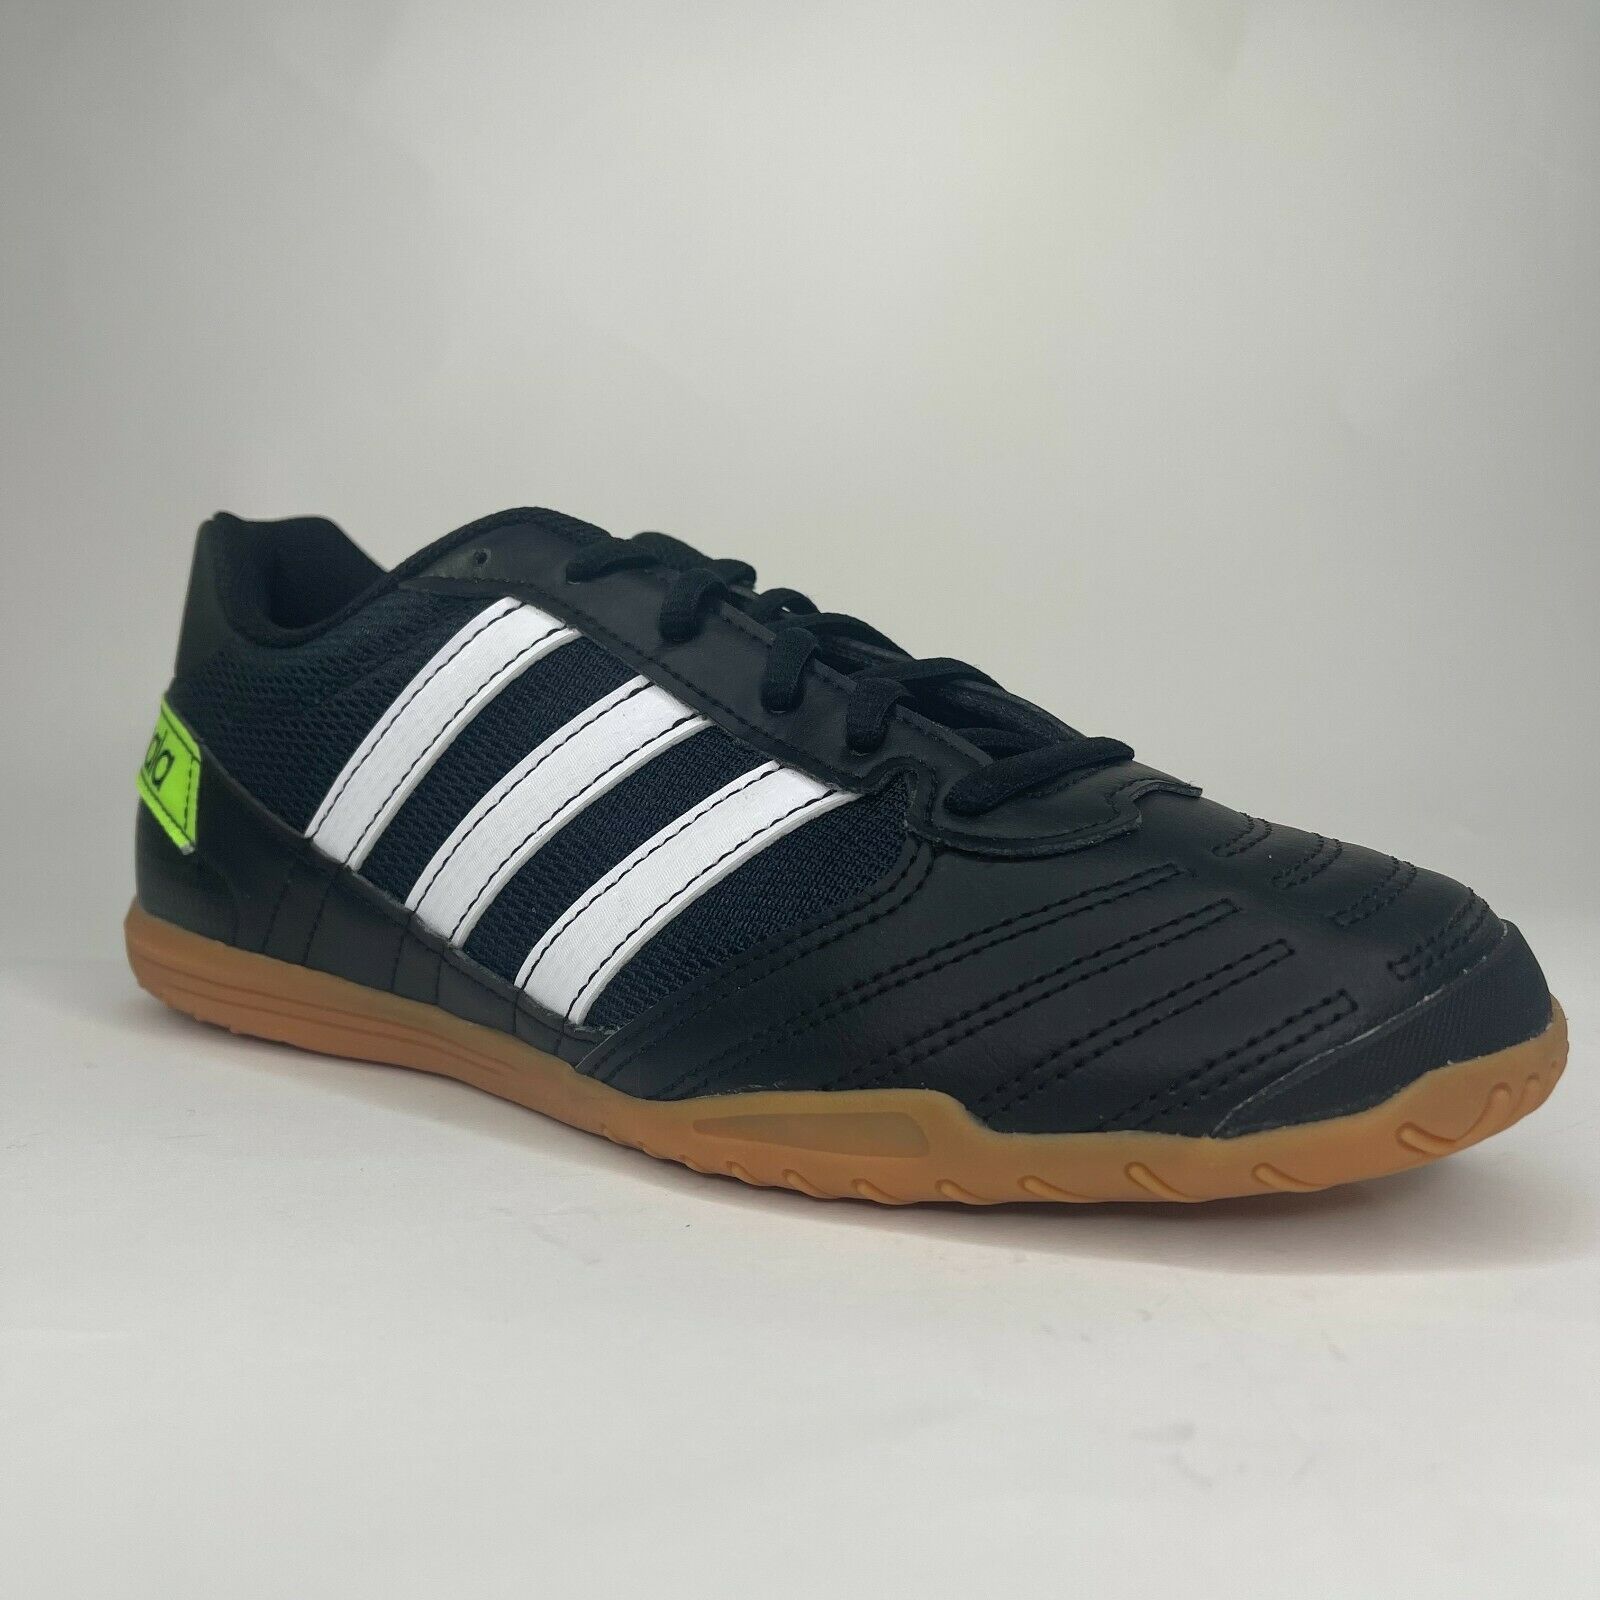 Adidas Mens Super Sala Black White Lime Indoor Soccer Shoes Size 9.5 FV5456 NIB